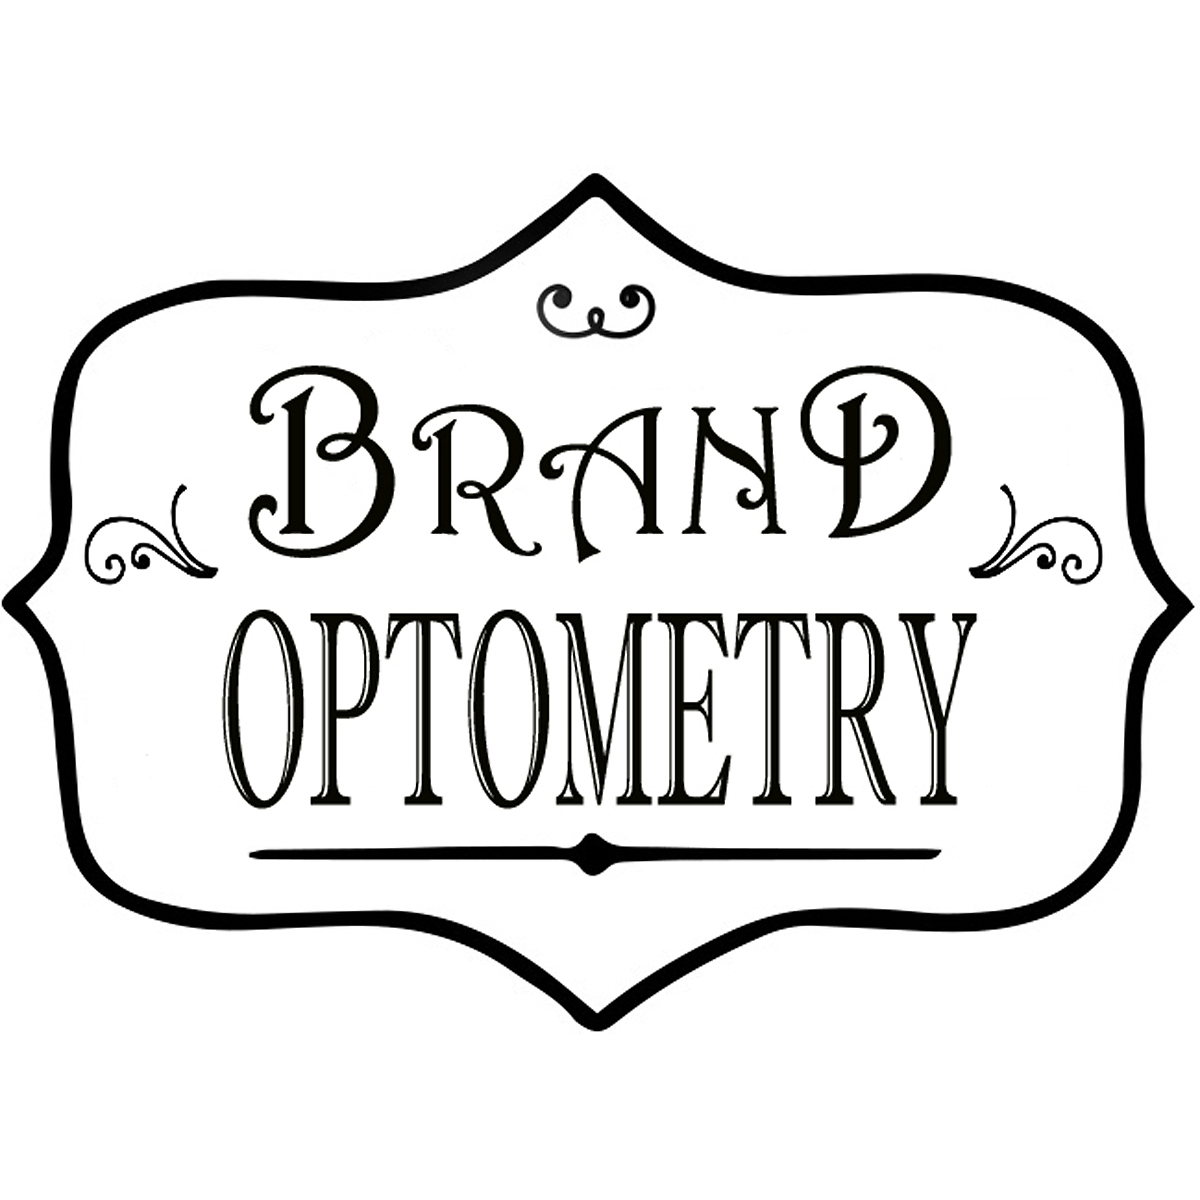 Brand Optometry Photo